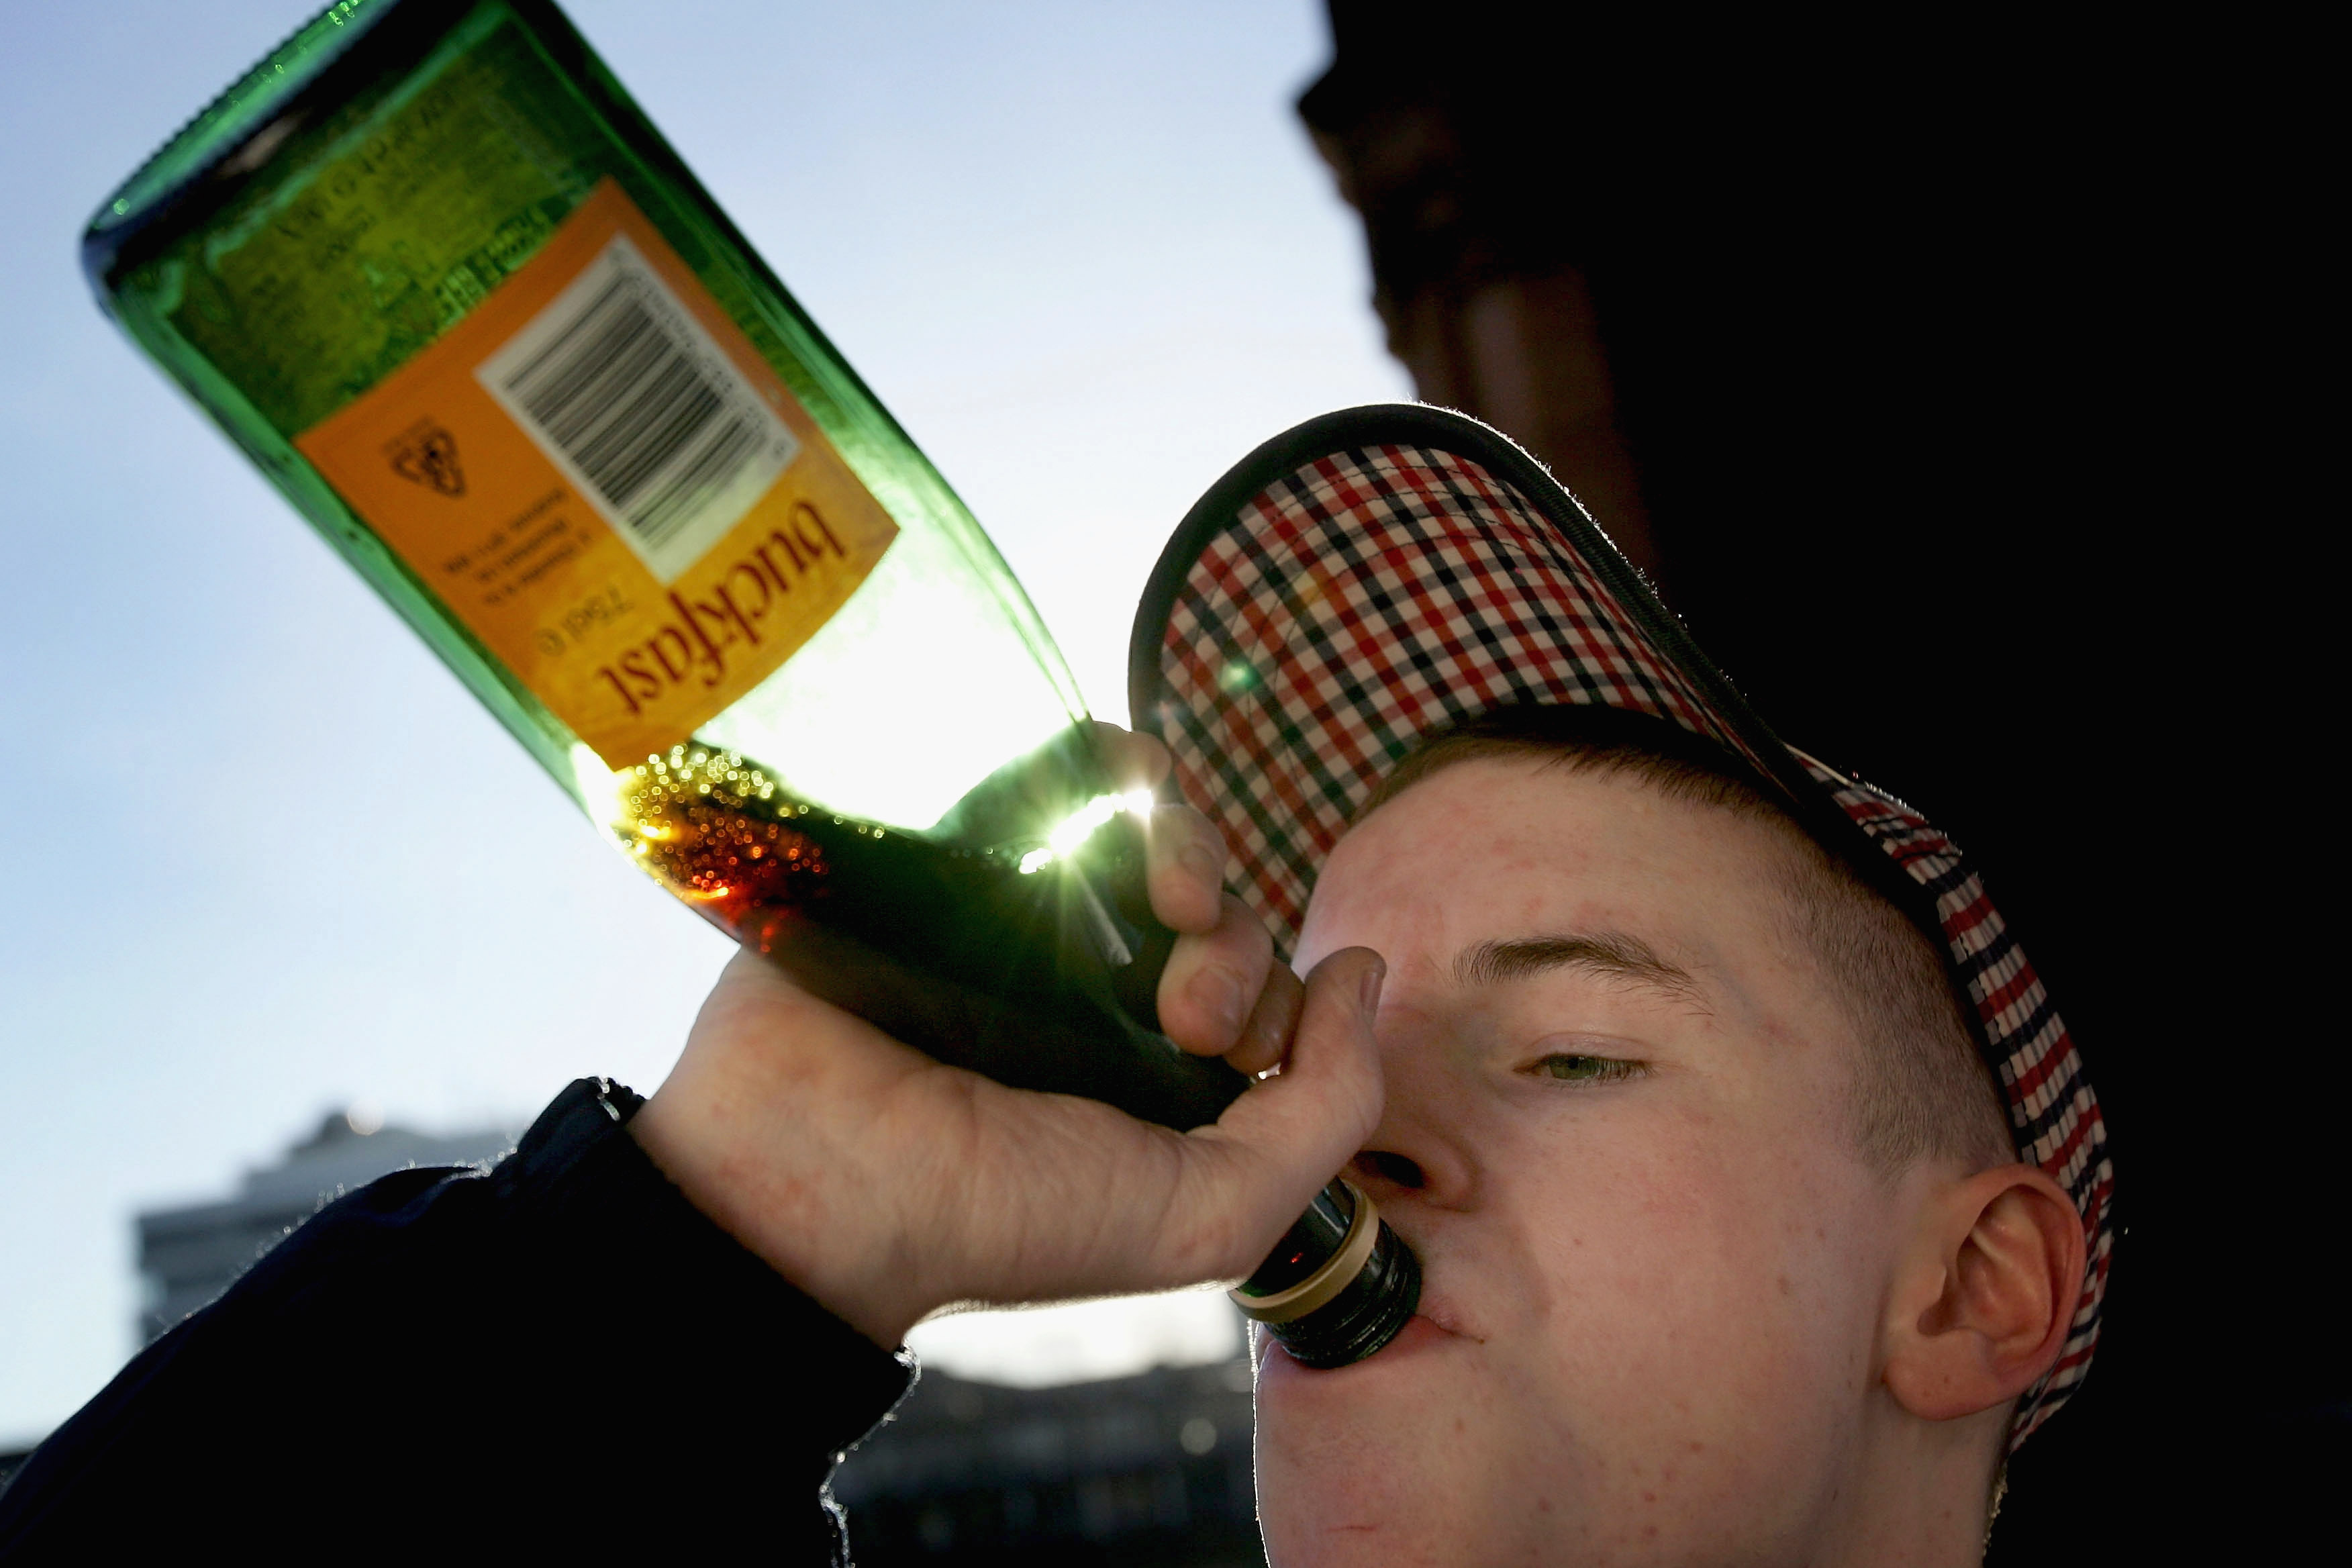 Riskanter Alkoholkonsum von Eltern fördert Rauschtrinken bei Jugendlichen